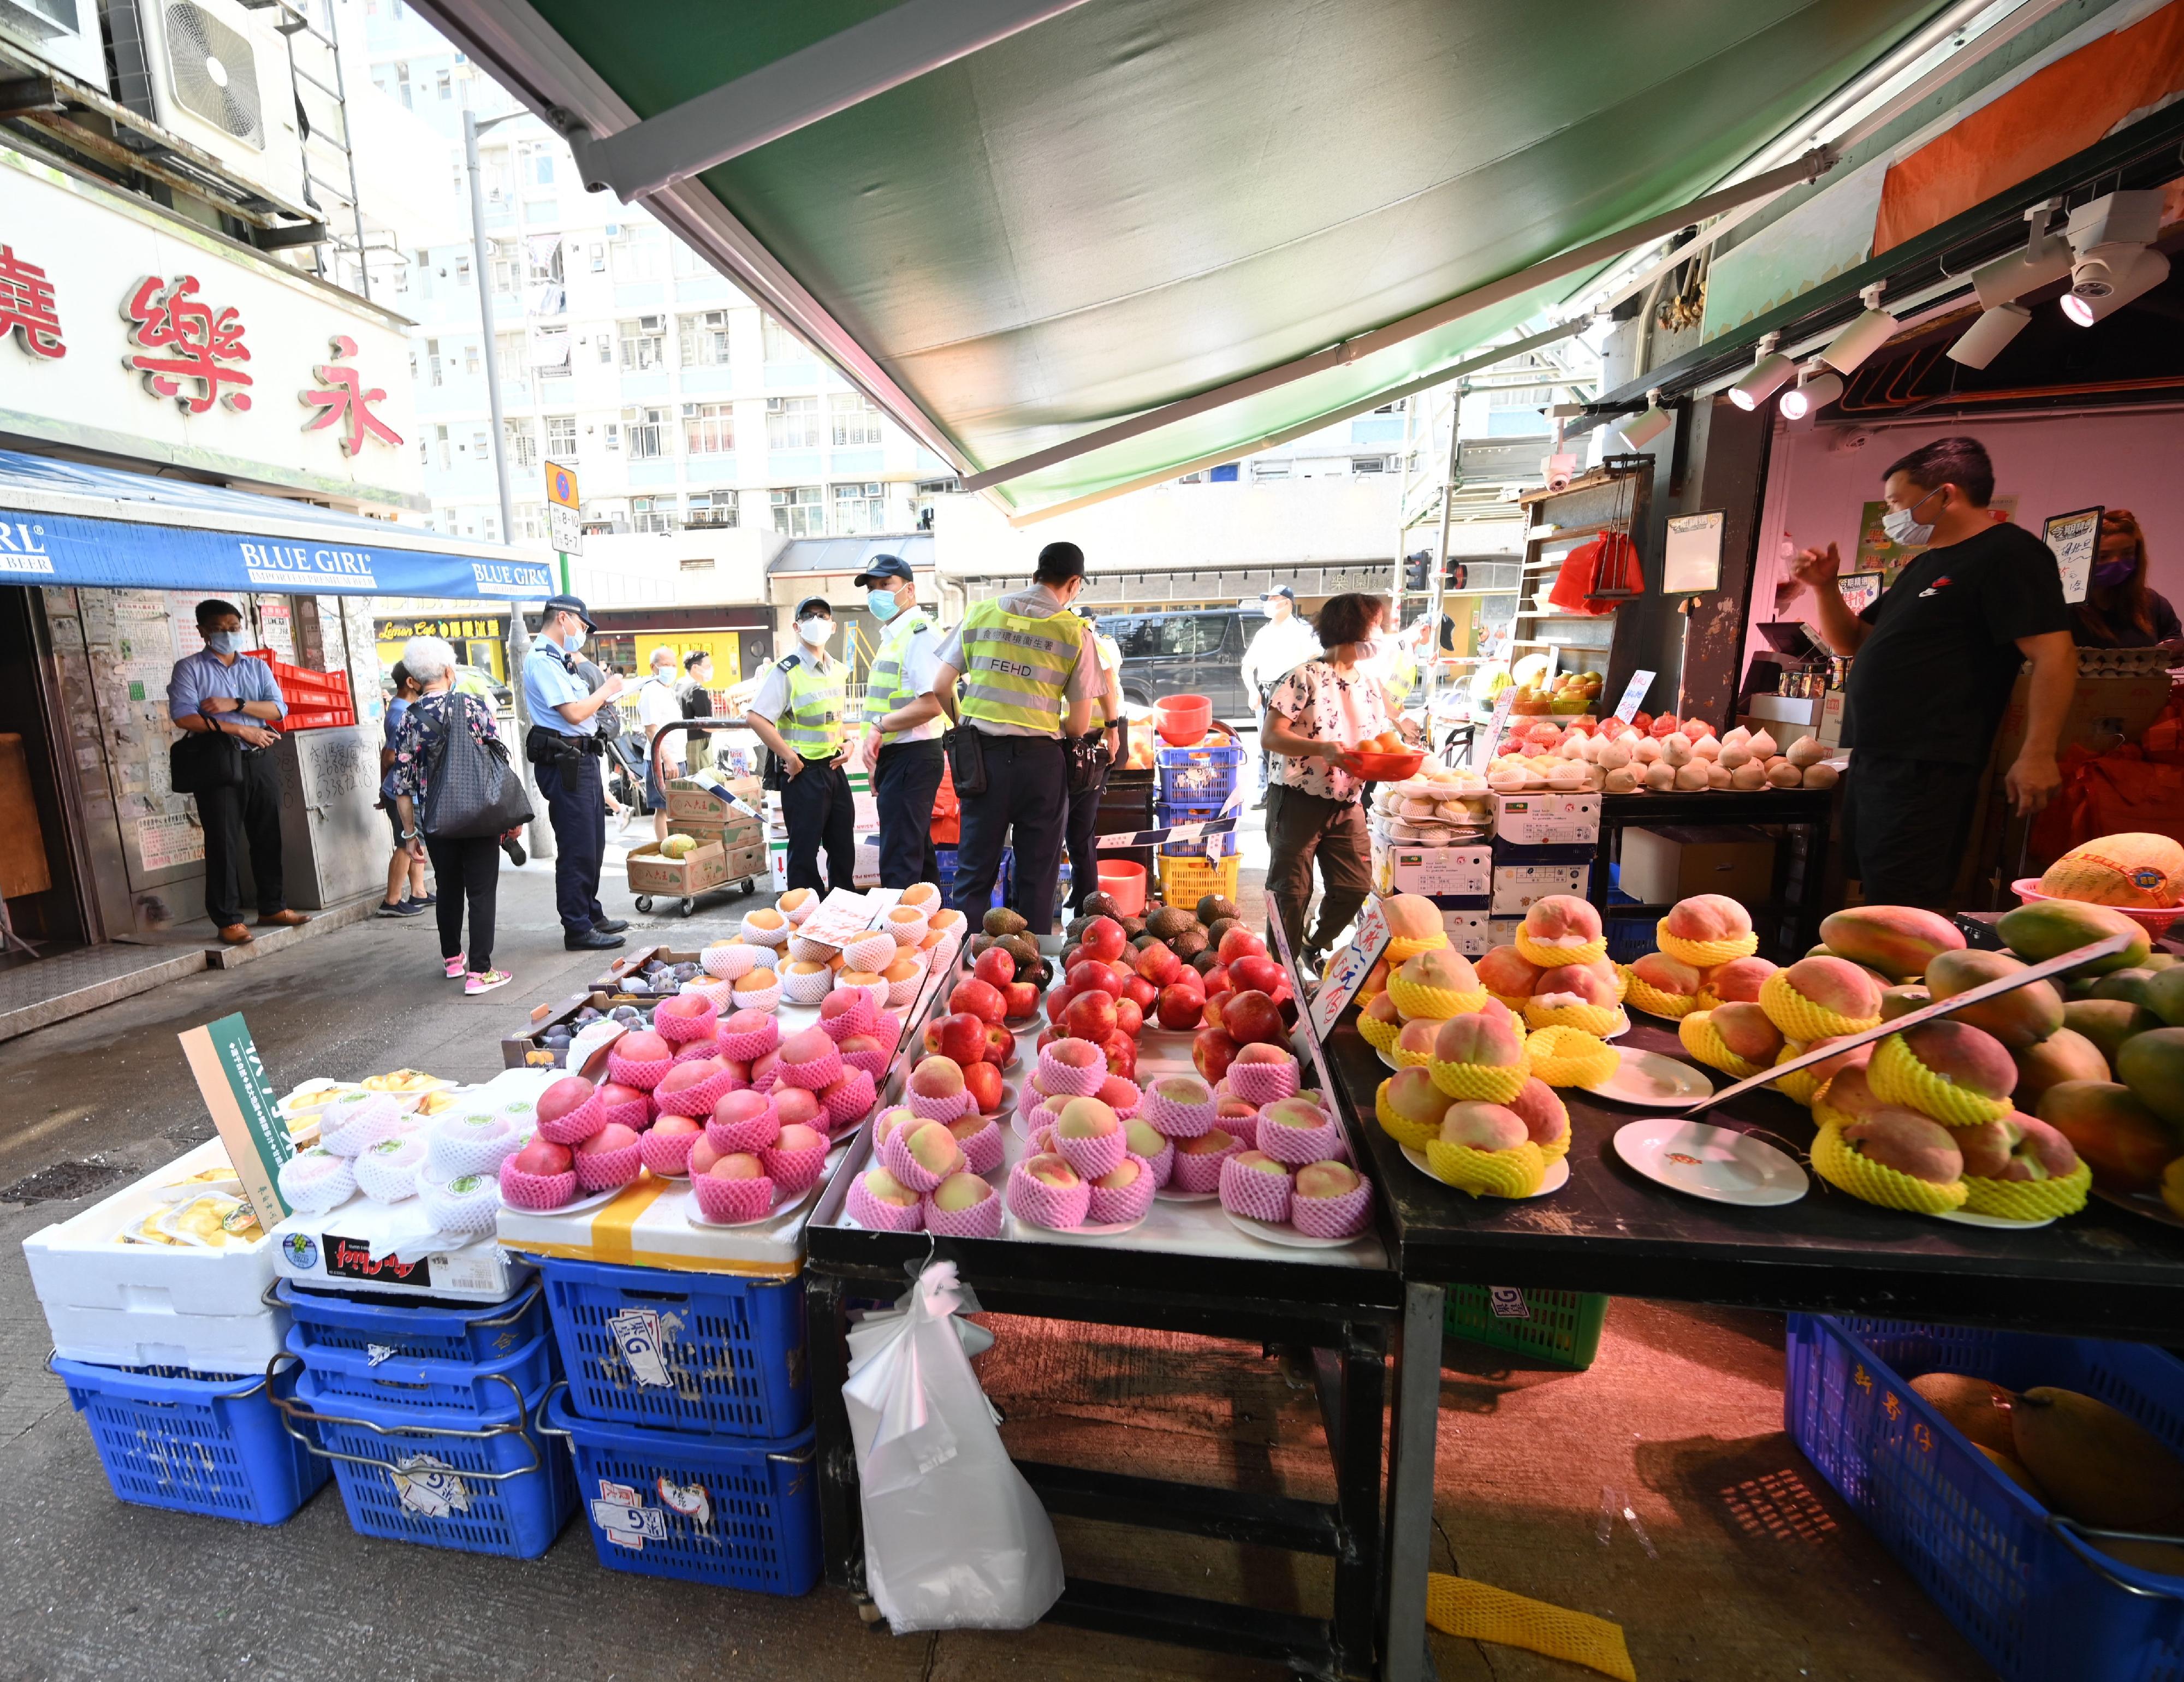 食物环境卫生署与香港警务处自十月三日起先后于各区展开连串严厉执法行动打击非法店铺阻街活动。图示葵青区一条街道于今日（十月九日）联合行动前的情况。 